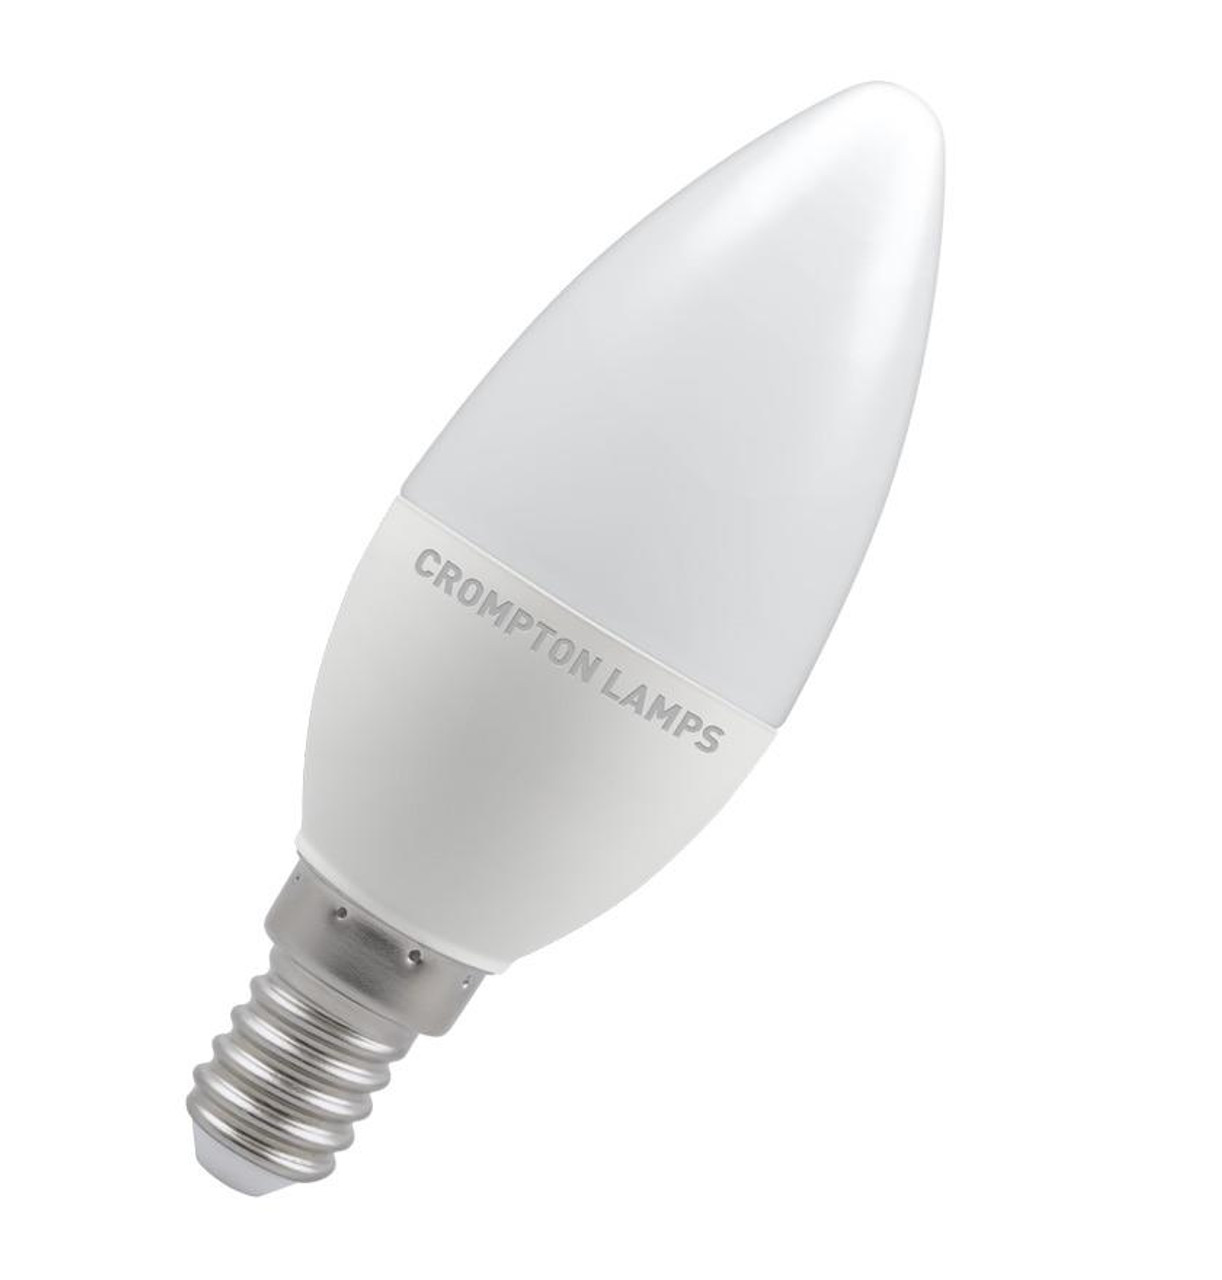 10 x Crompton 60W  Plain Candle 35mm E27 Light Bulb Lamp Job Lot UK SELLER 